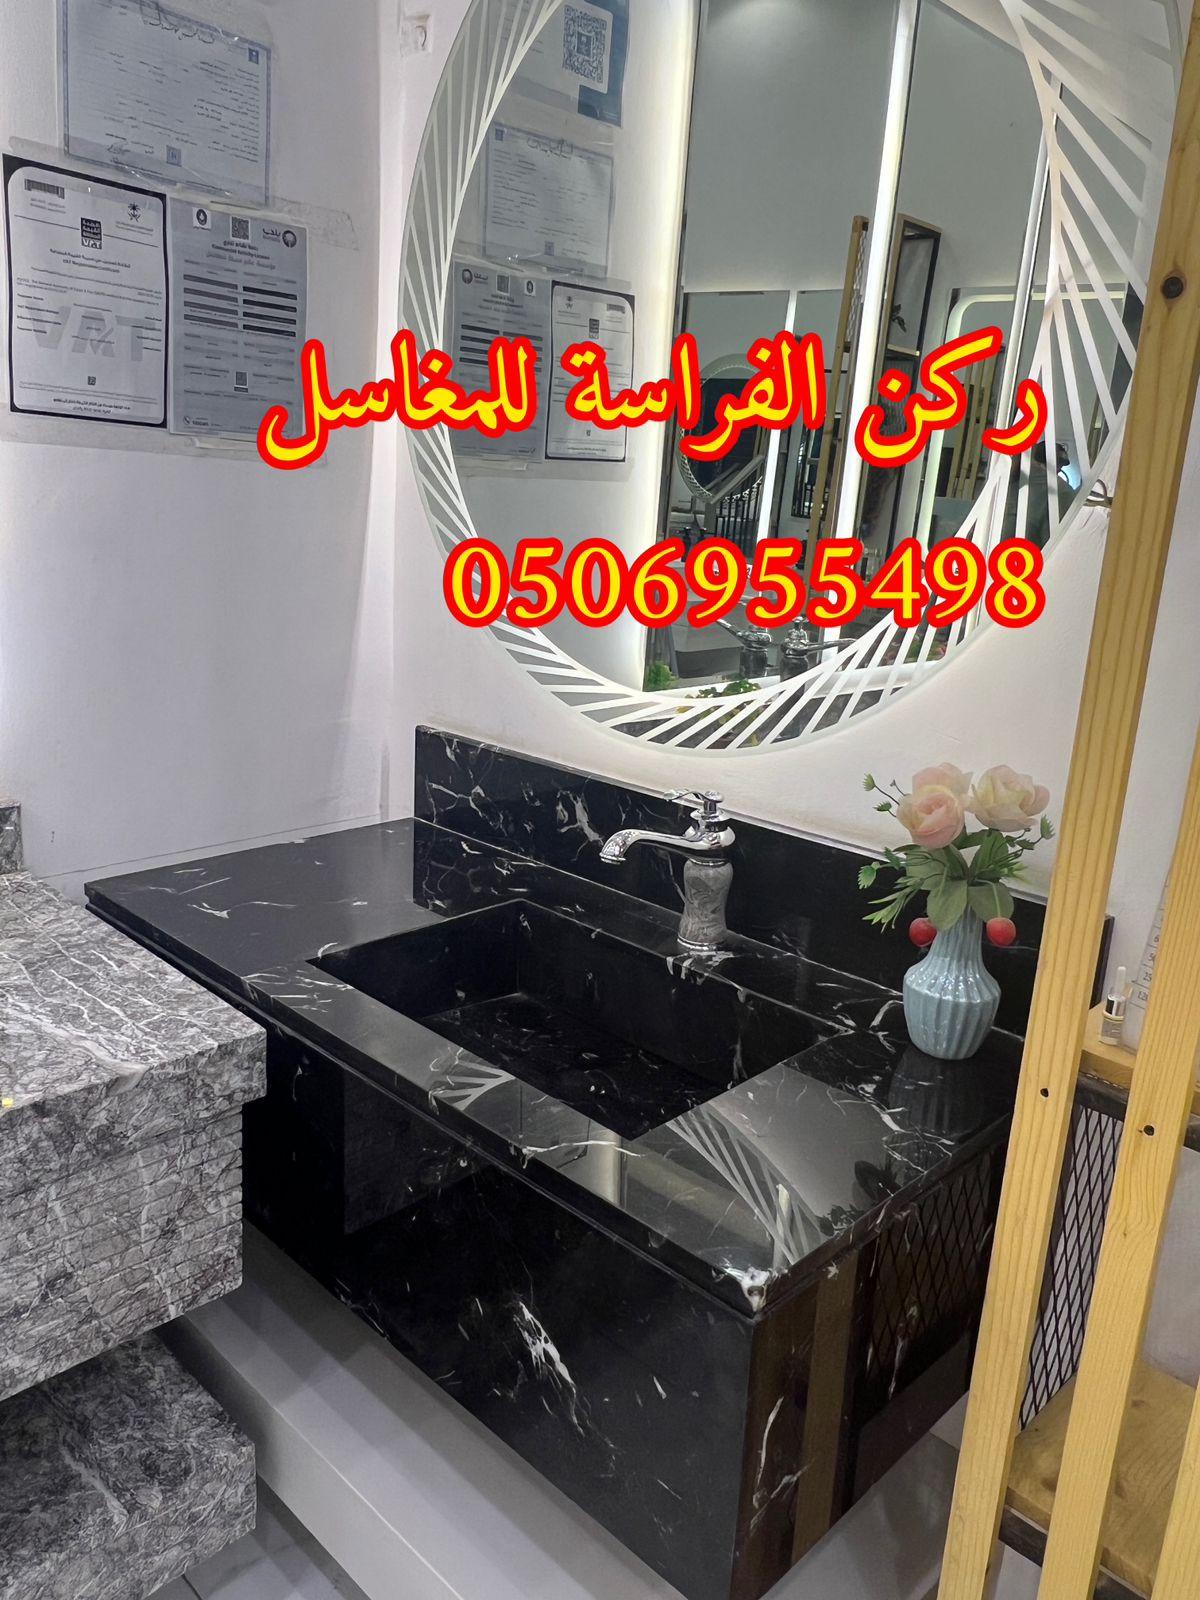 الرياض - تركيب مغاسل حمامات رخام في الرياض, 0506955498 705268244